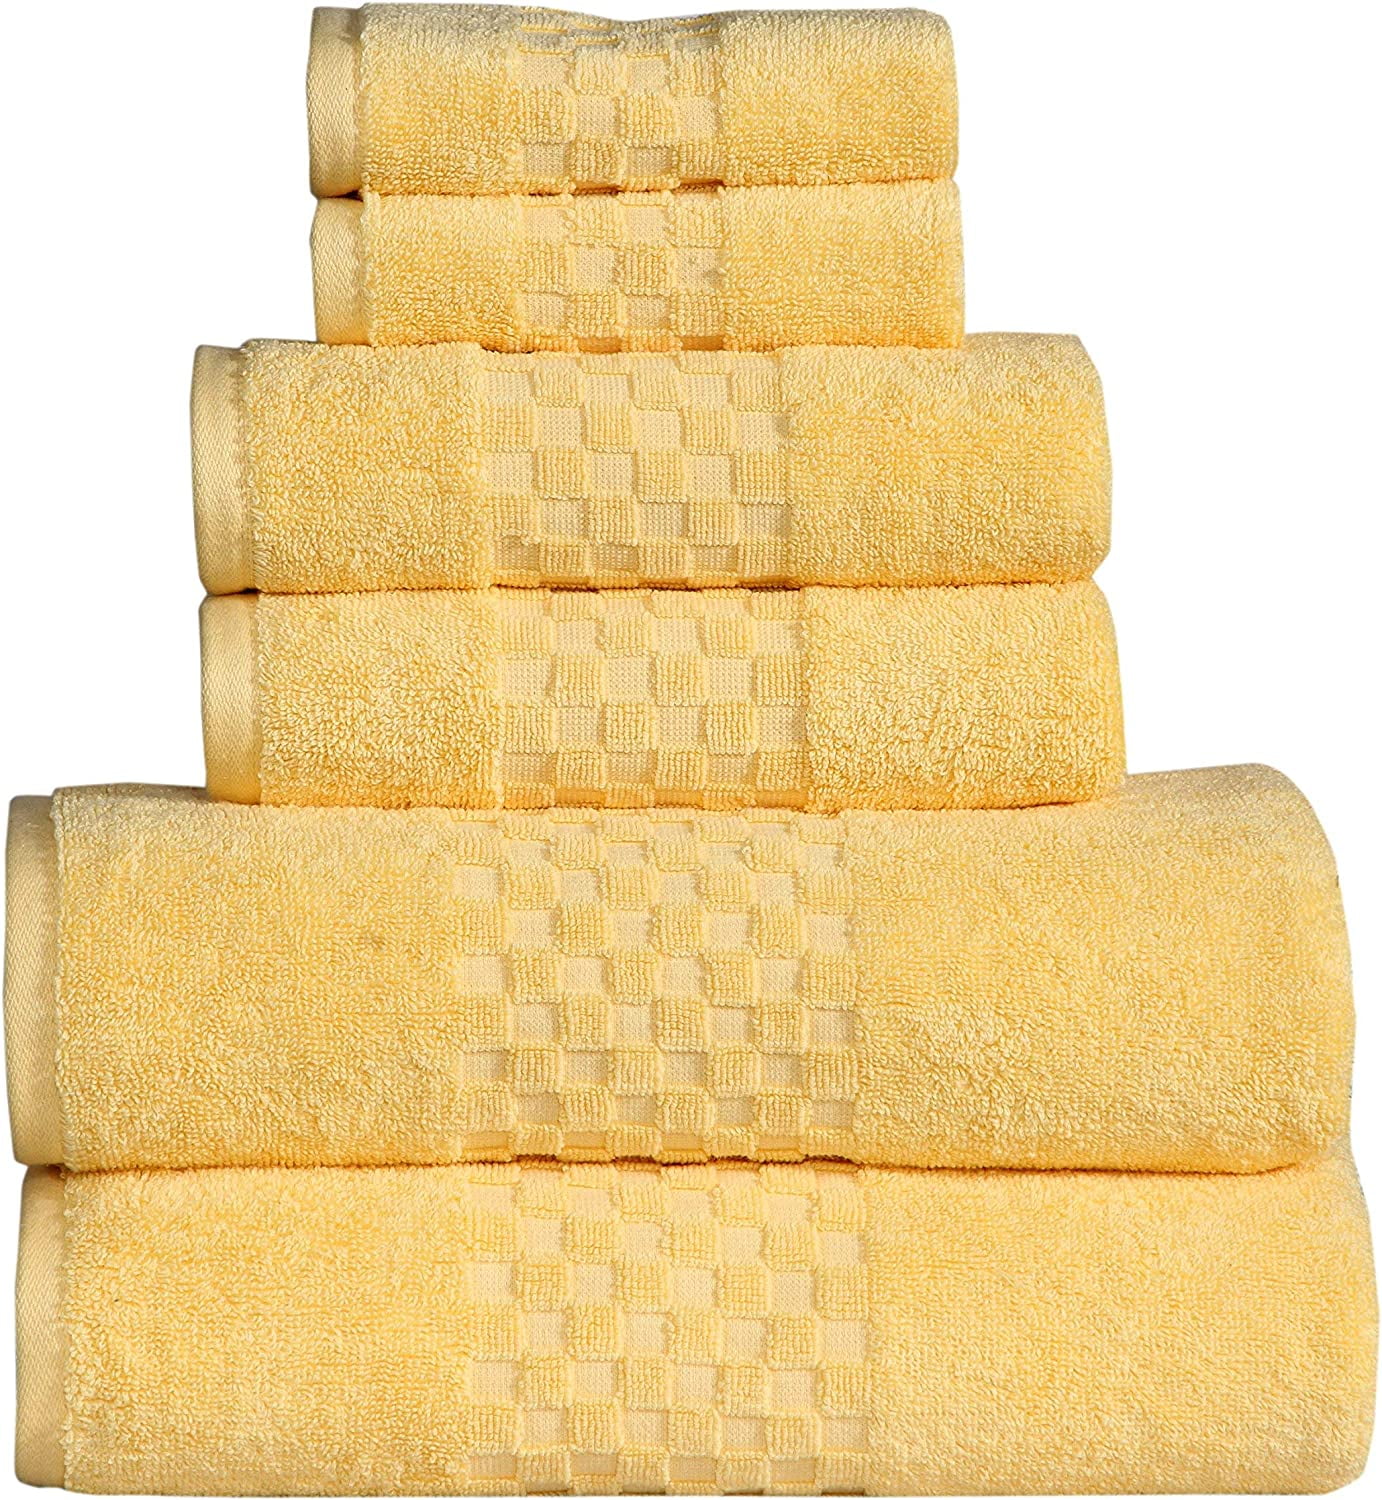 Queenzliving Elite 6 Piece Luxury Bathroom Towel Gift Set - 650 GSM Su